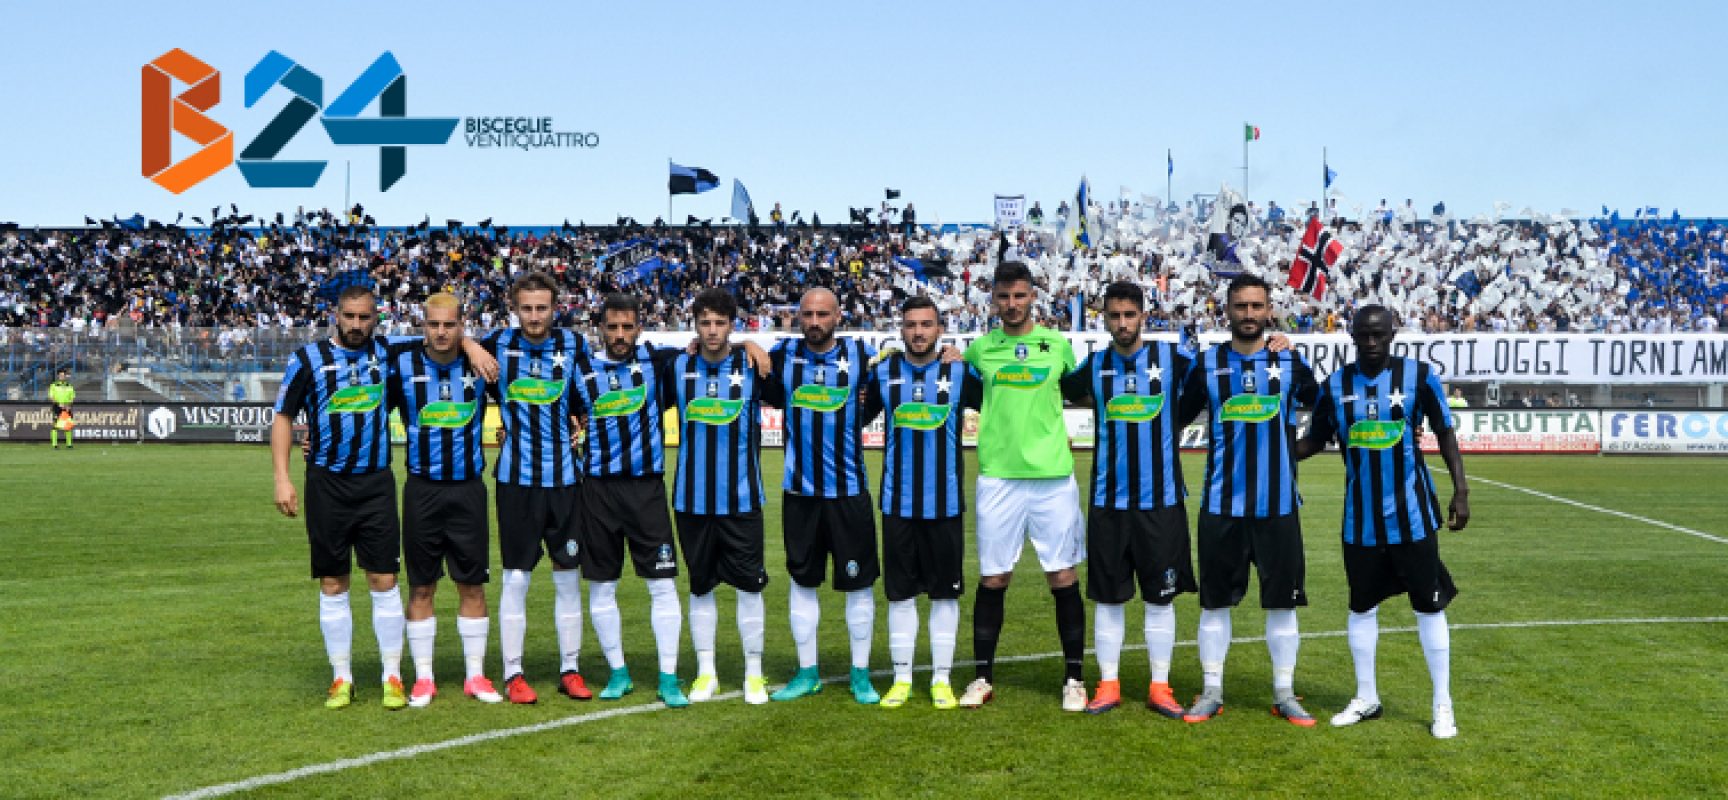 Poule Scudetto Serie D: Bisceglie Calcio organizza volo charter per i tifosi